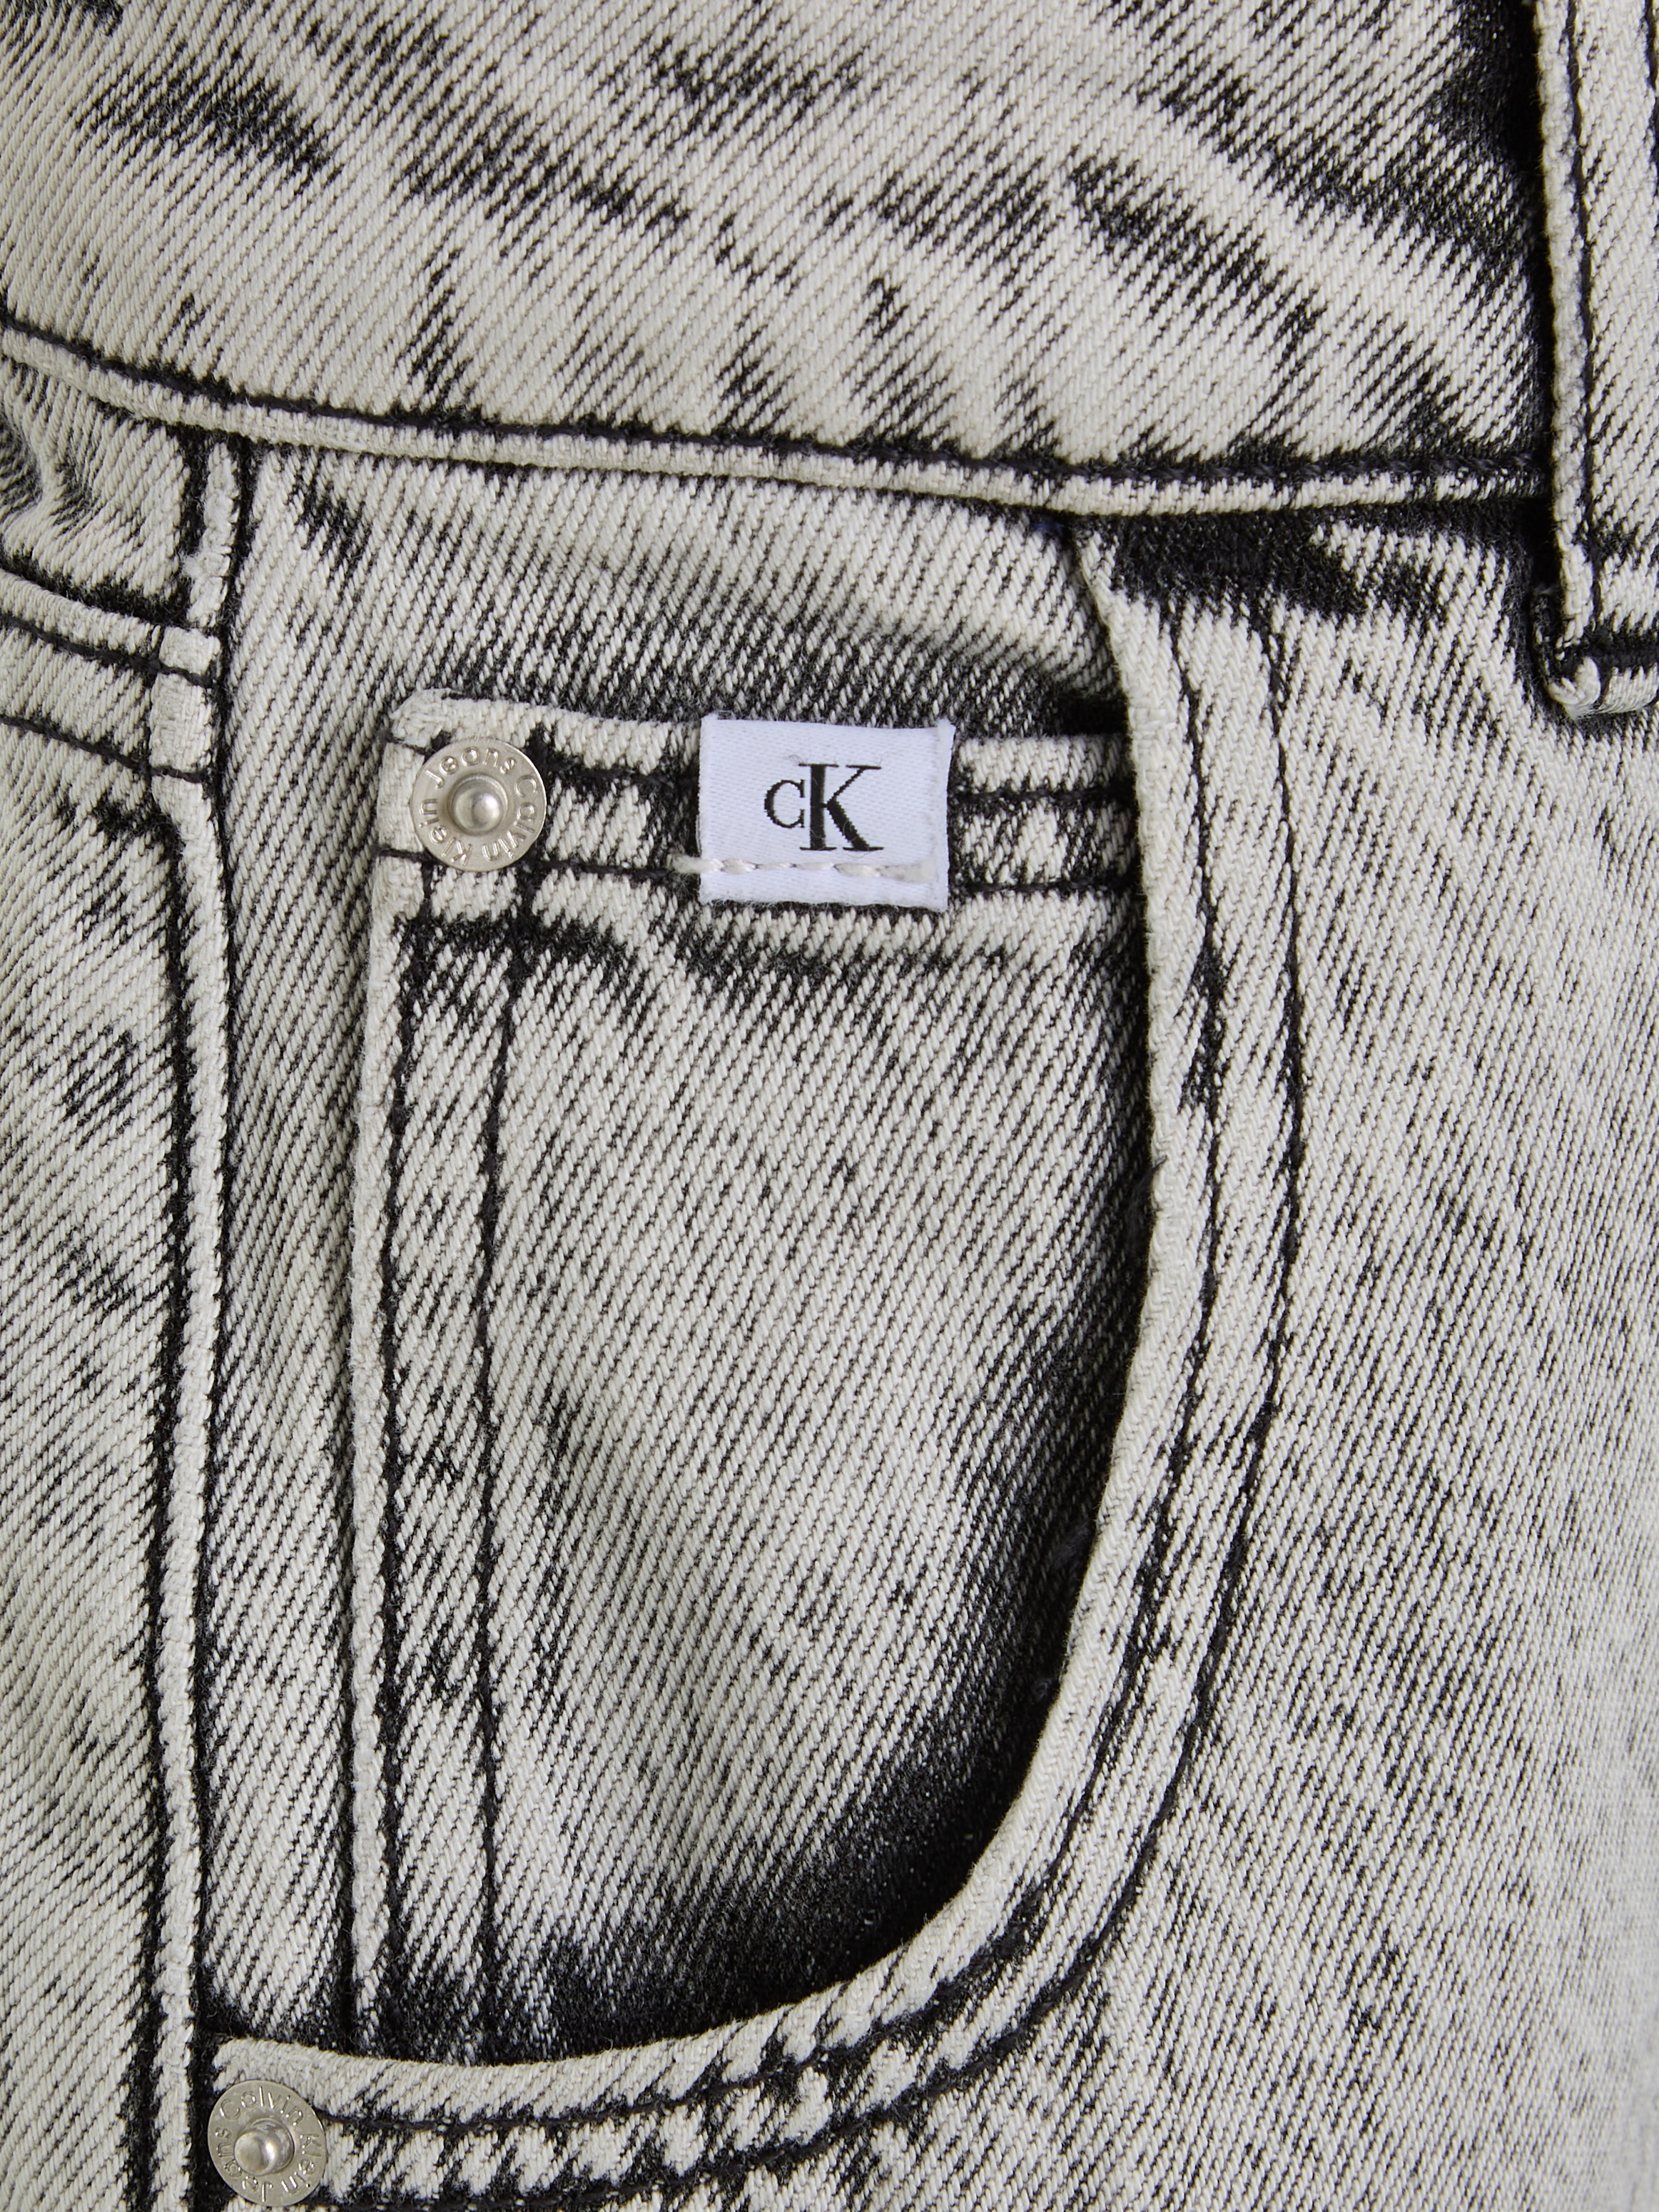 Calvin Klein Jeans Straight-Jeans »BARREL STONE LIGHT GREY«, für Kinder bis 16 Jahre